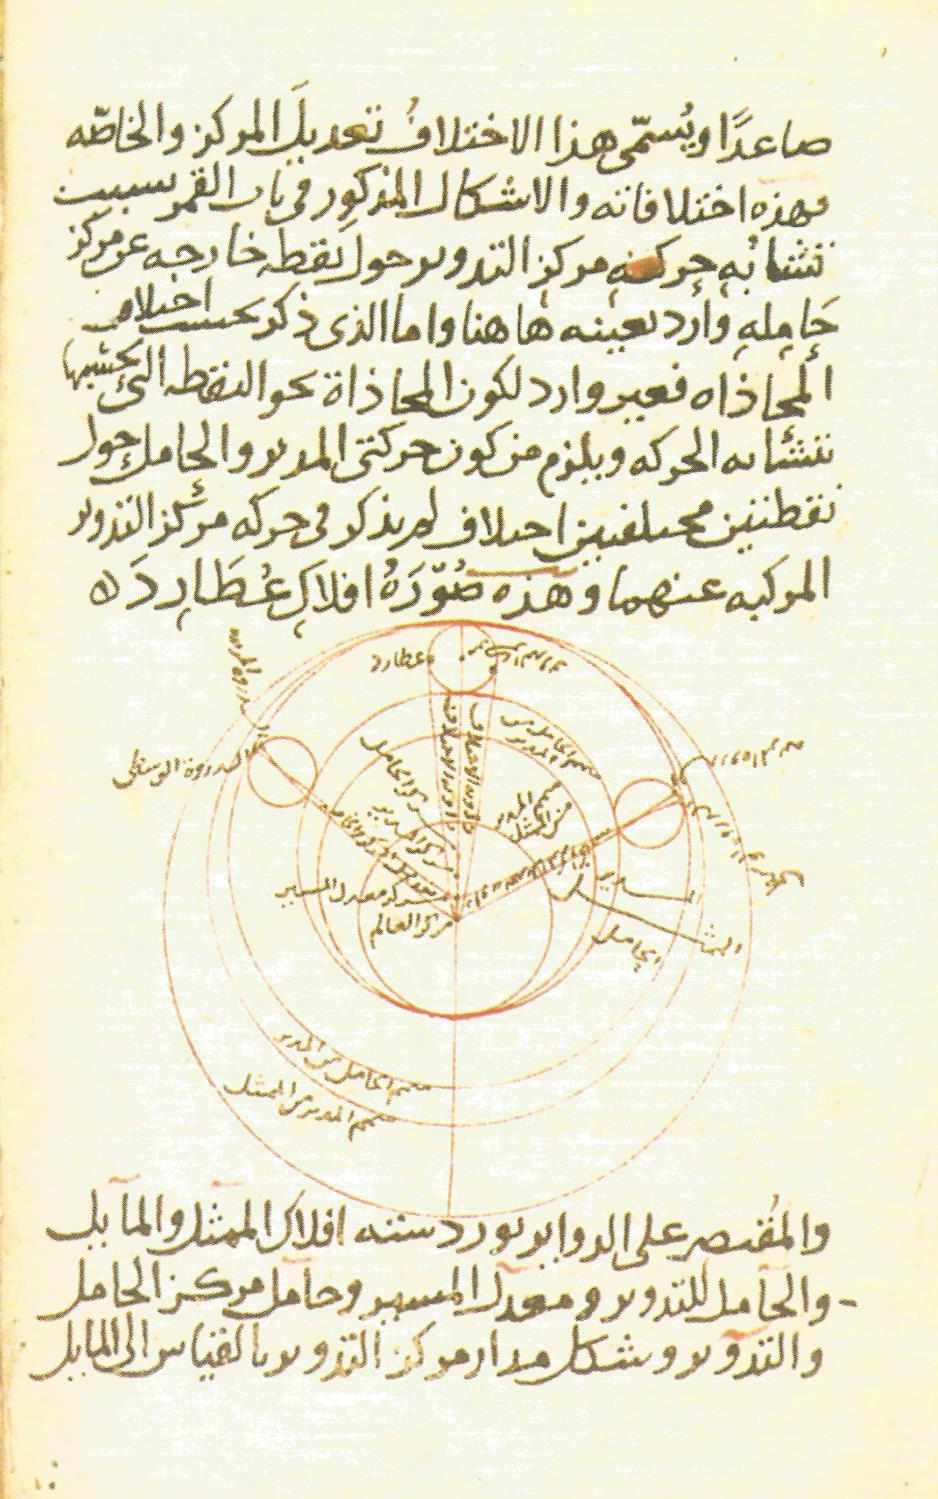 Μια σελίδα από το σύγγραμμα του 13 ου αιώνα Υπόμνημα στην Αστρονομία του Νασίρ αλ -Ντιν αλ